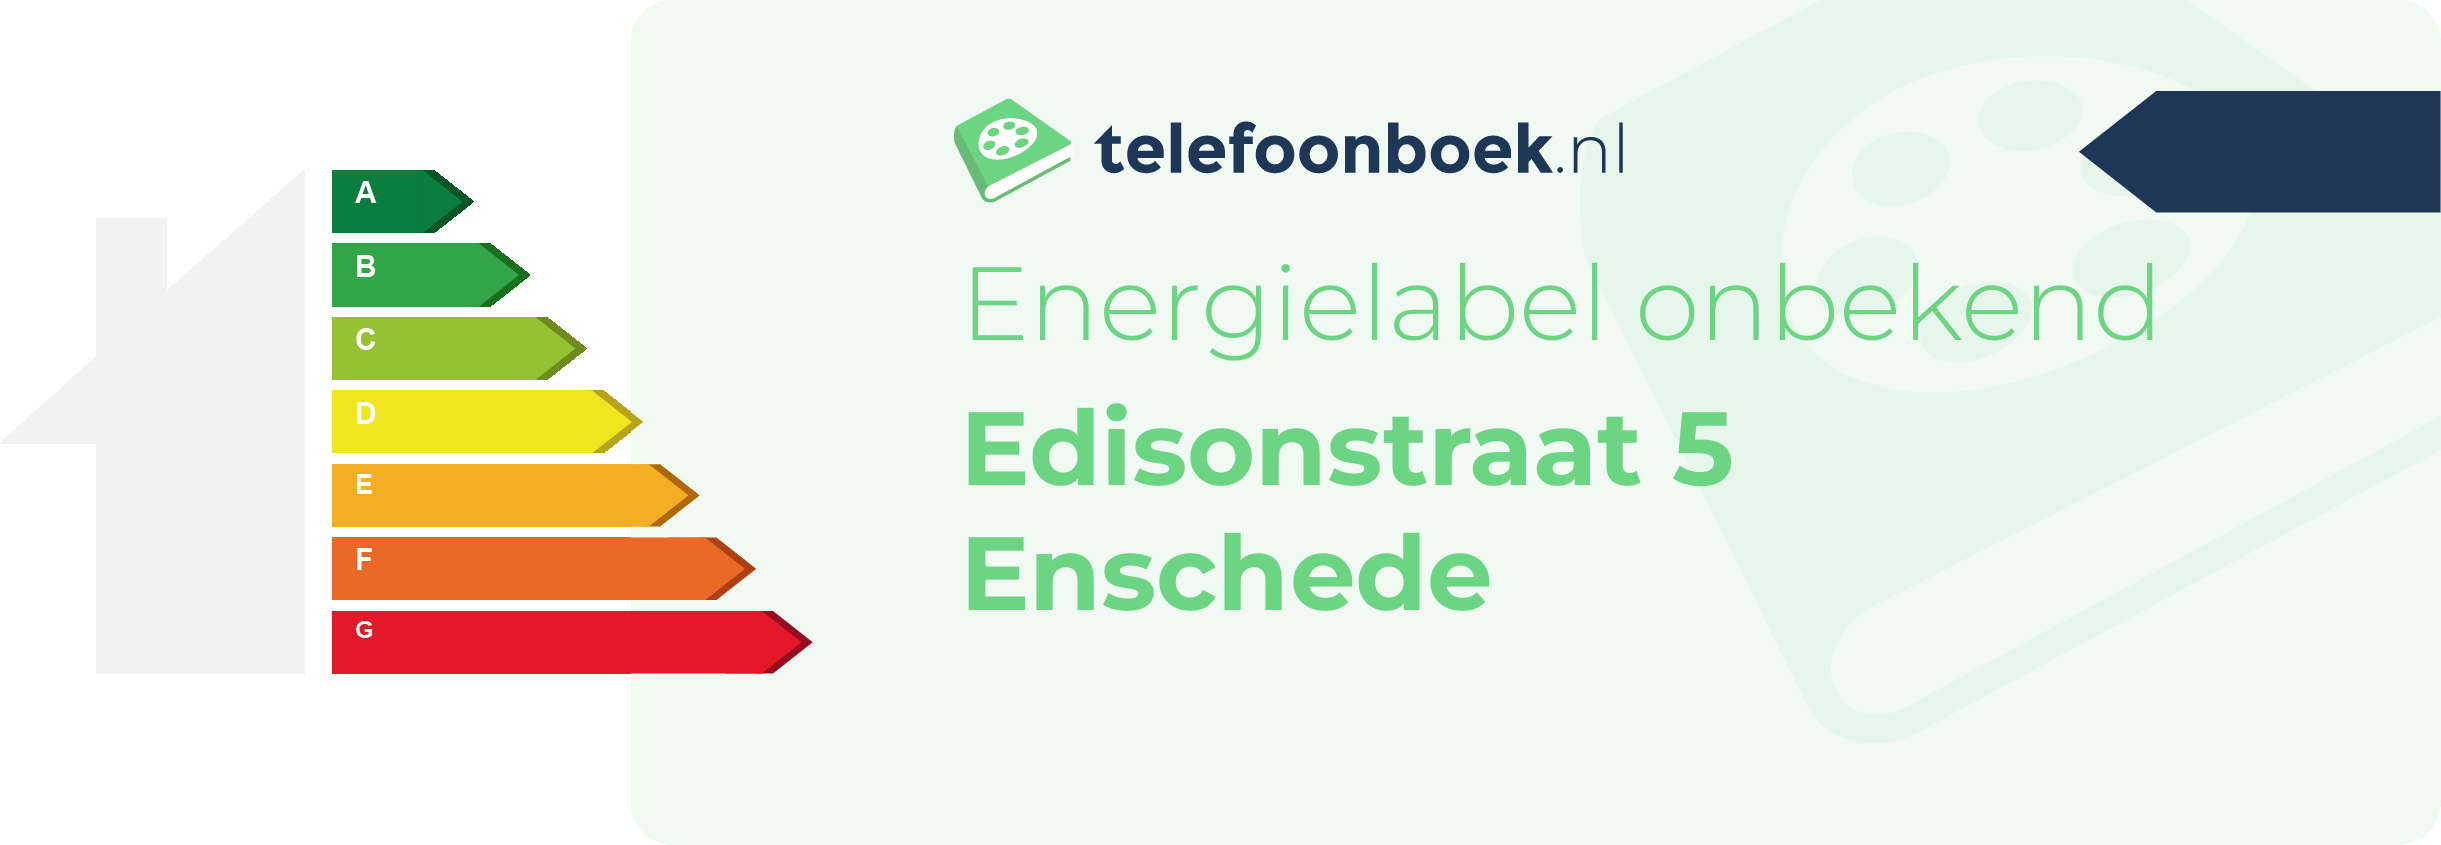 Energielabel Edisonstraat 5 Enschede